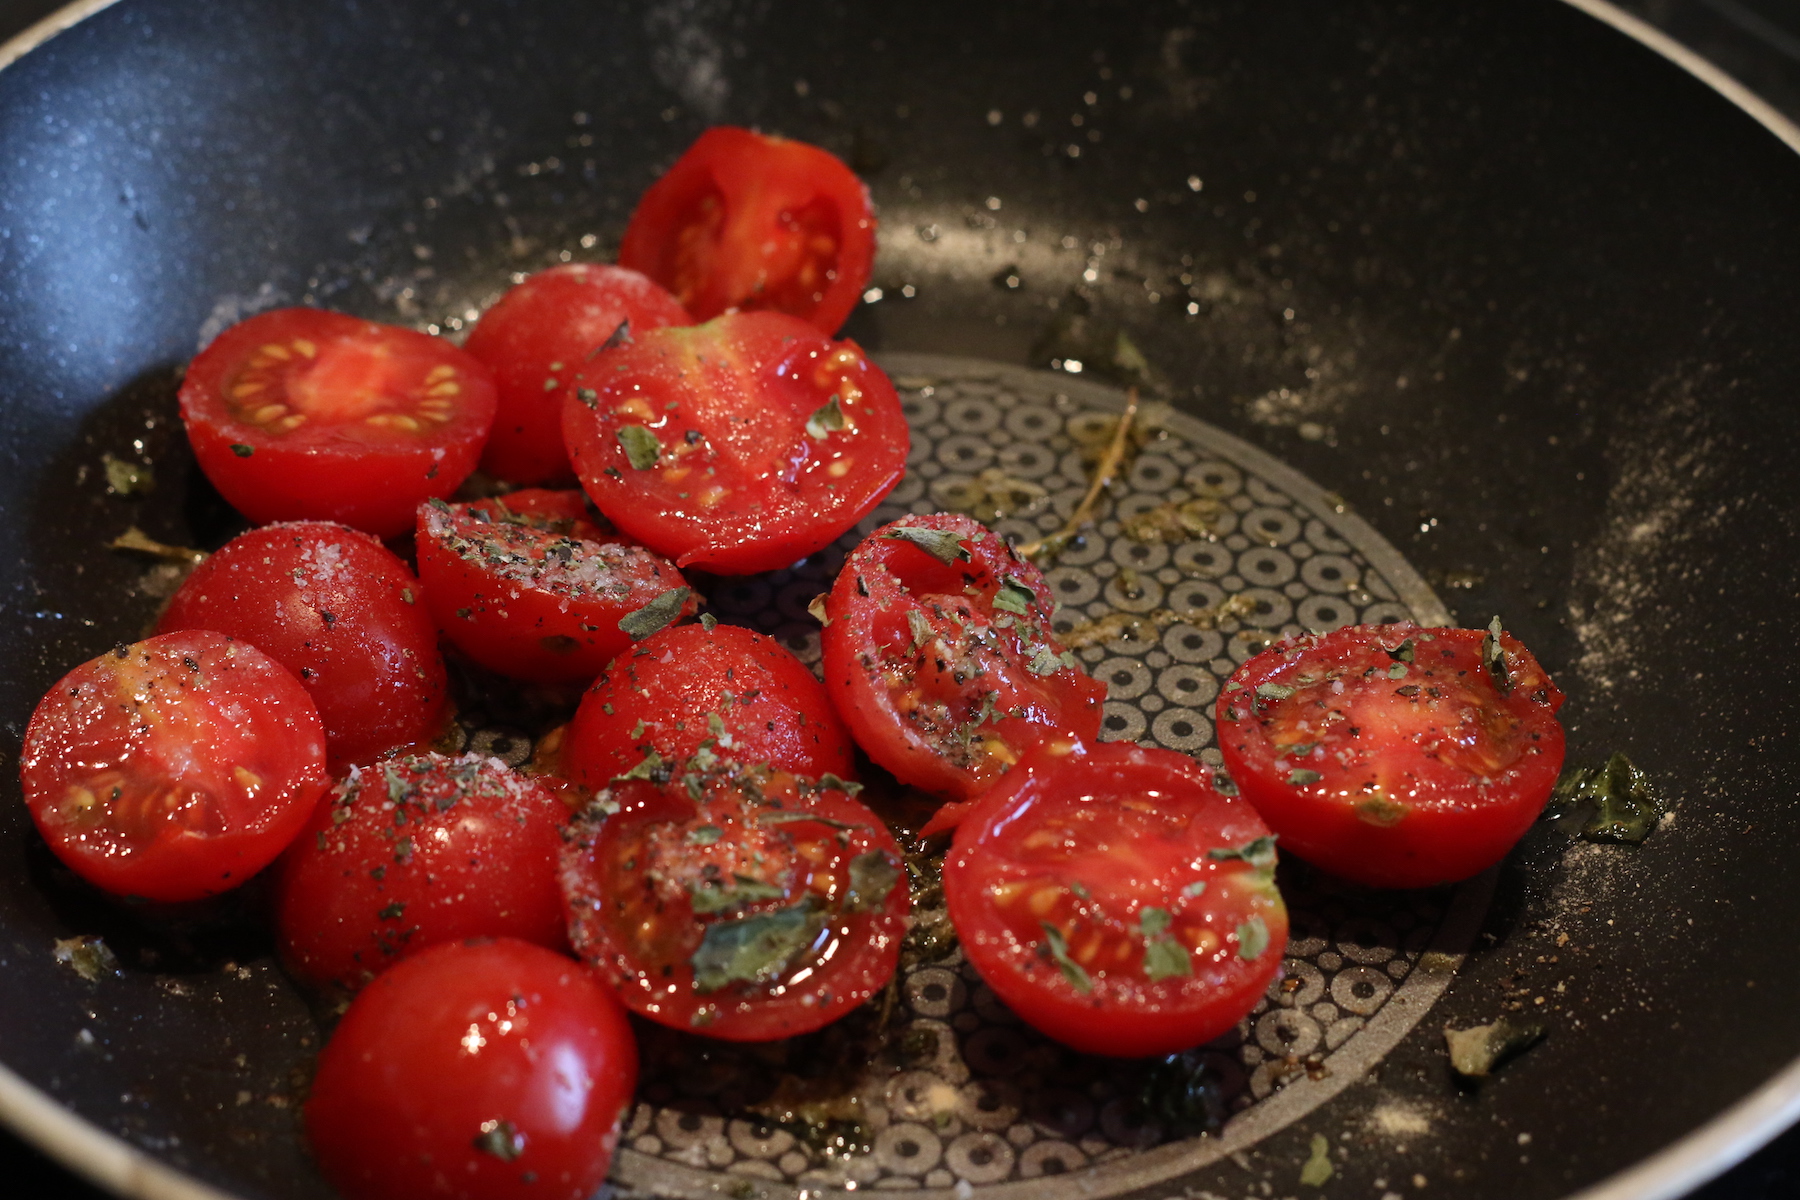 En accompagnement, quelques tomates cerises coupées en deux